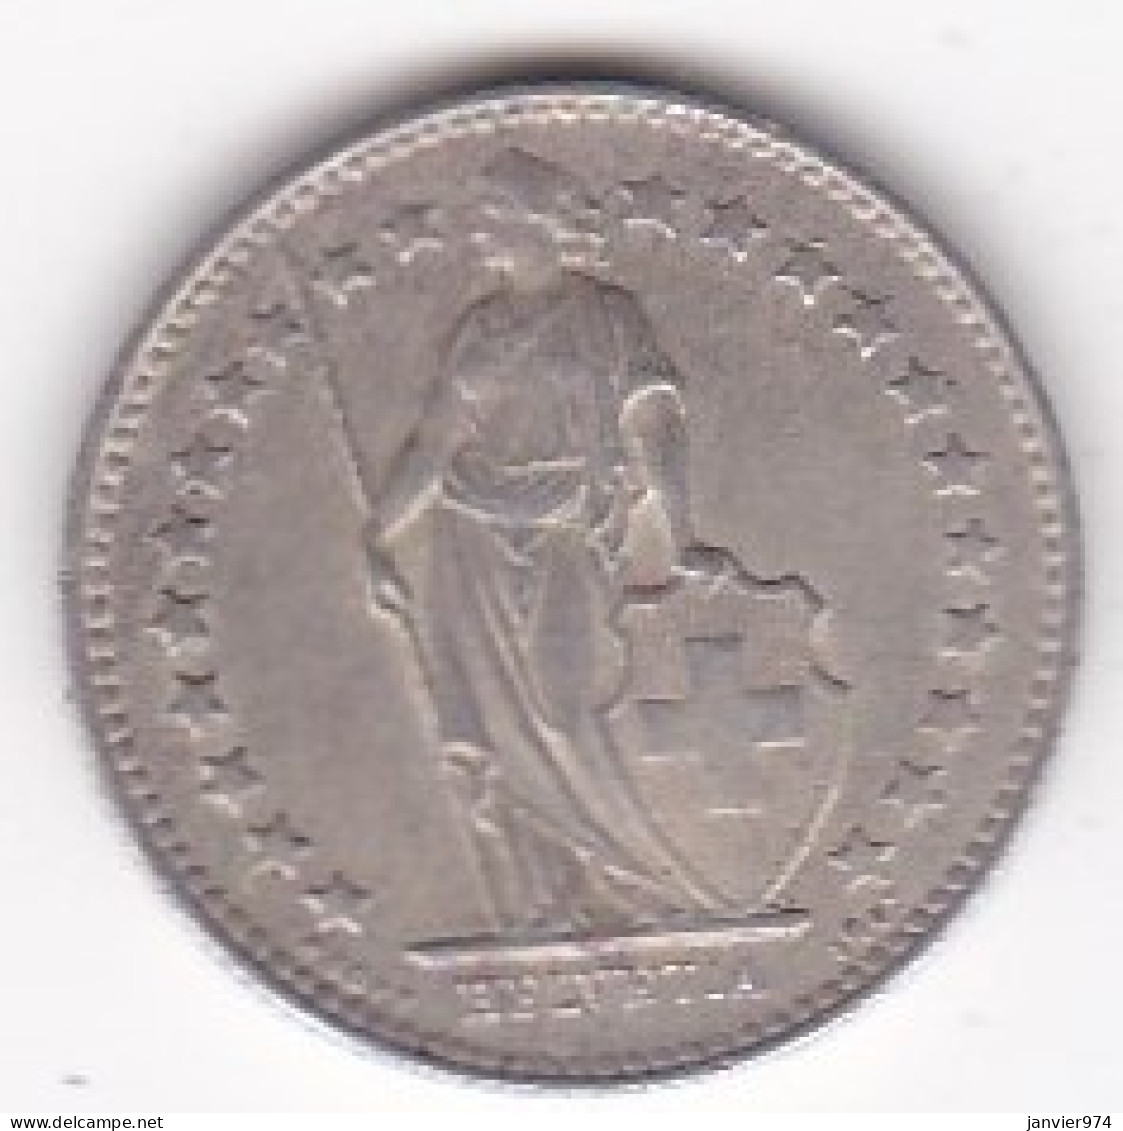 SUISSE. 1/2 Franc 1951 B , En Argent - 1/2 Franc